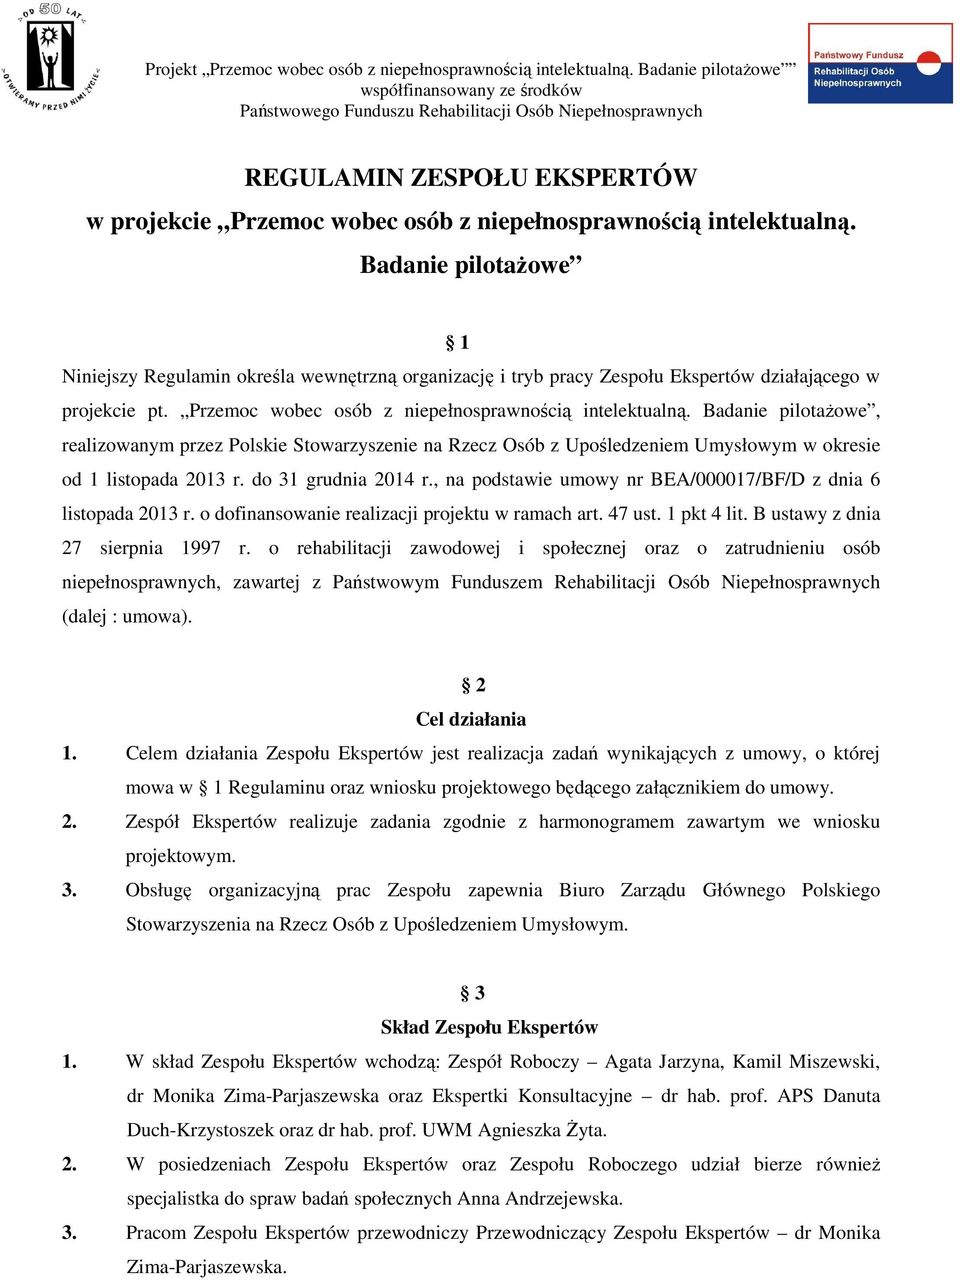 Badanie pilotaŝowe, realizowanym przez Polskie Stowarzyszenie na Rzecz Osób z Upośledzeniem Umysłowym w okresie od 1 listopada 2013 r. do 31 grudnia 2014 r.